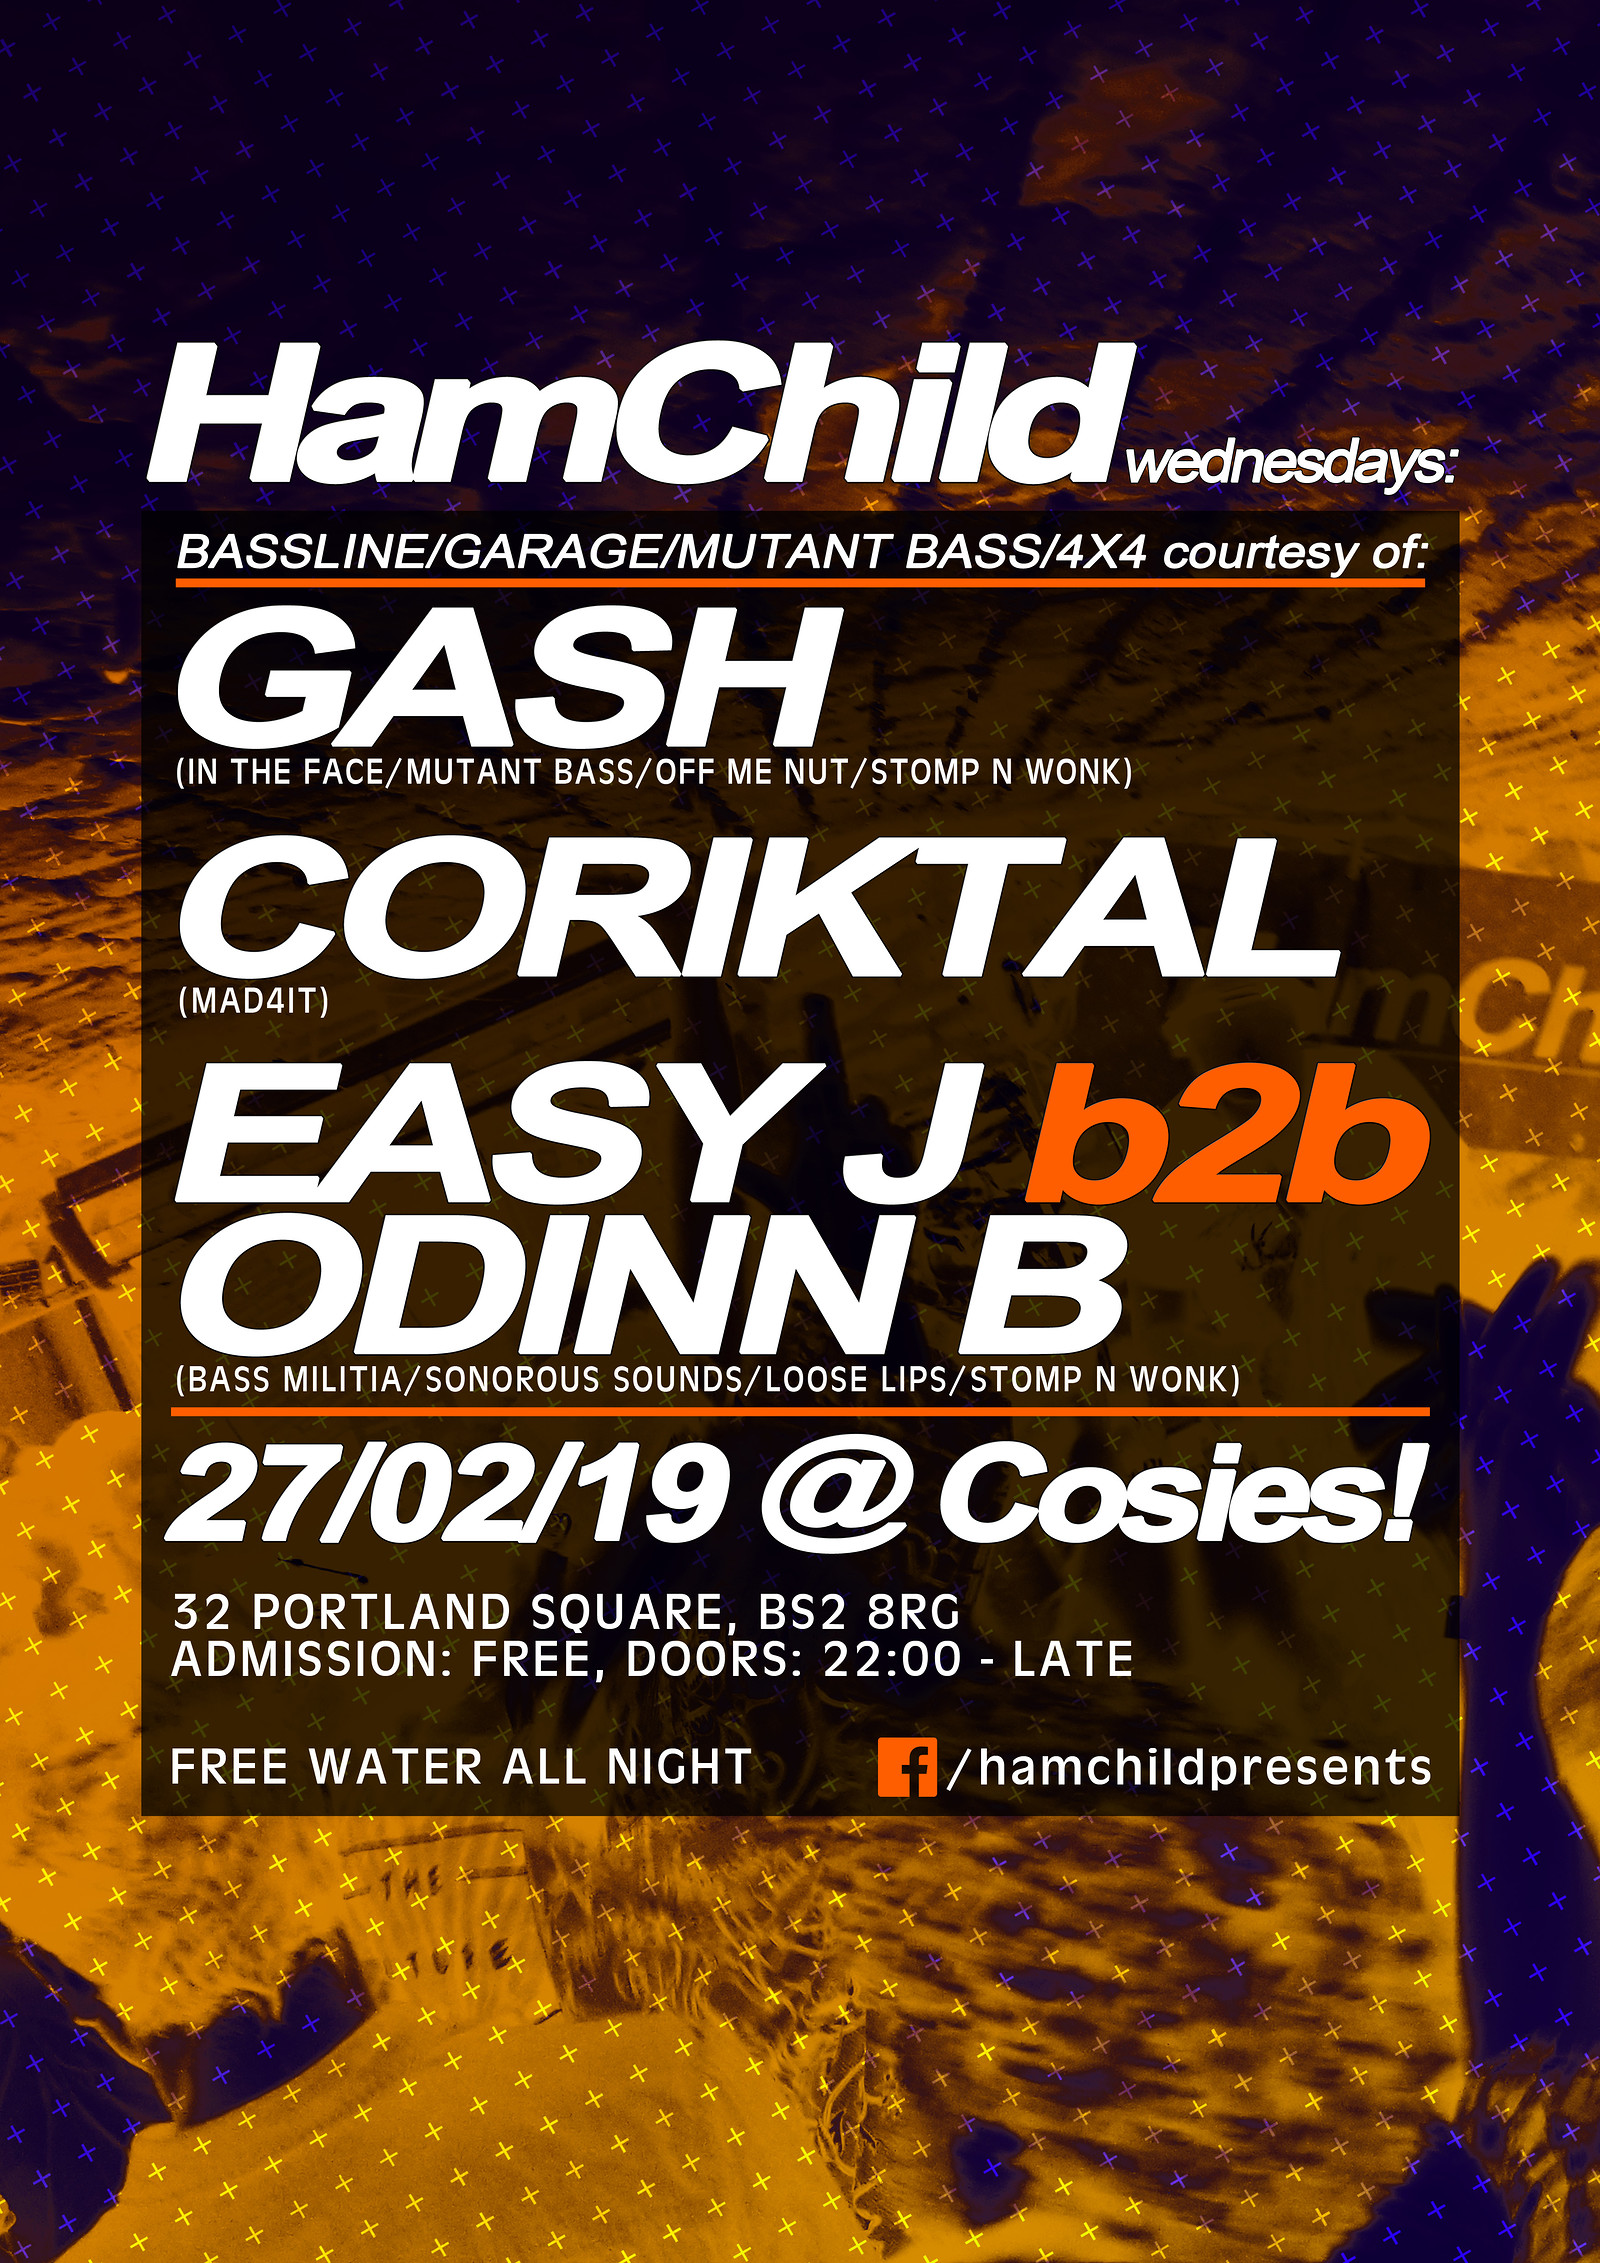 HamChild Presents: Gash, Coriktal, Easy J, Odinn B at Cosies